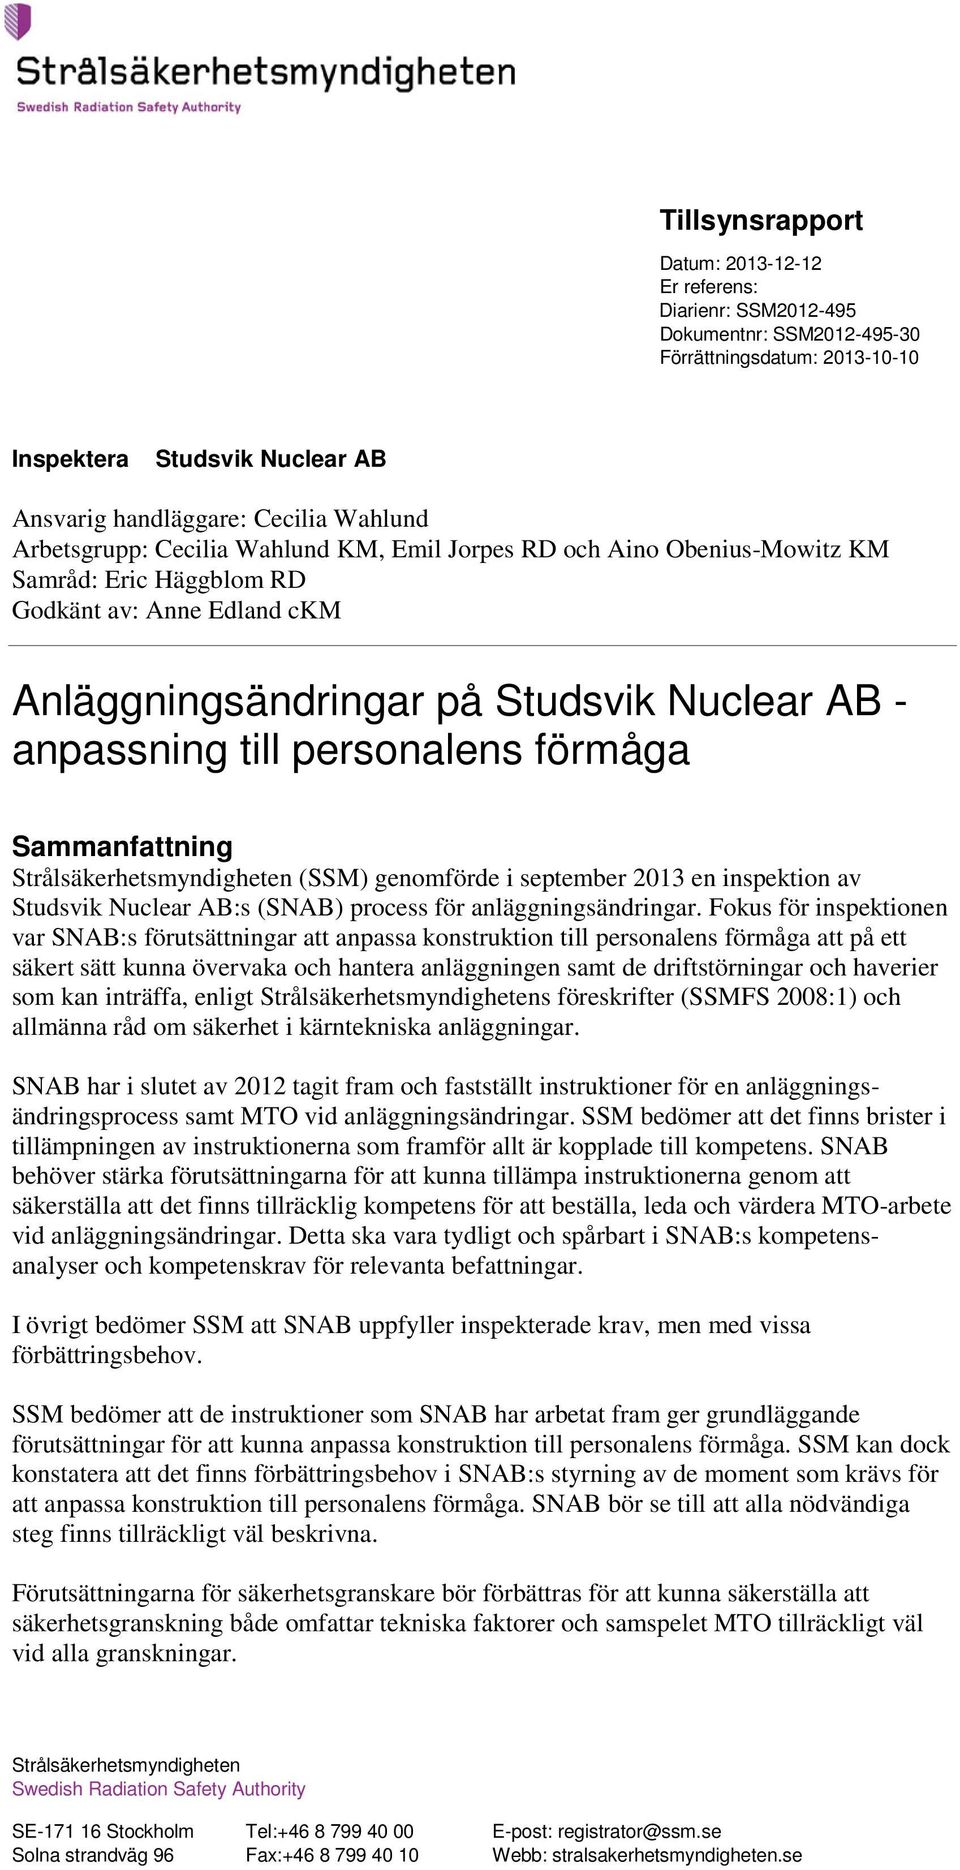 Strålsäkerhetsmyndigheten (SSM) genomförde i september 2013 en inspektion av Studsvik Nuclear AB:s (SNAB) process för anläggningsändringar.